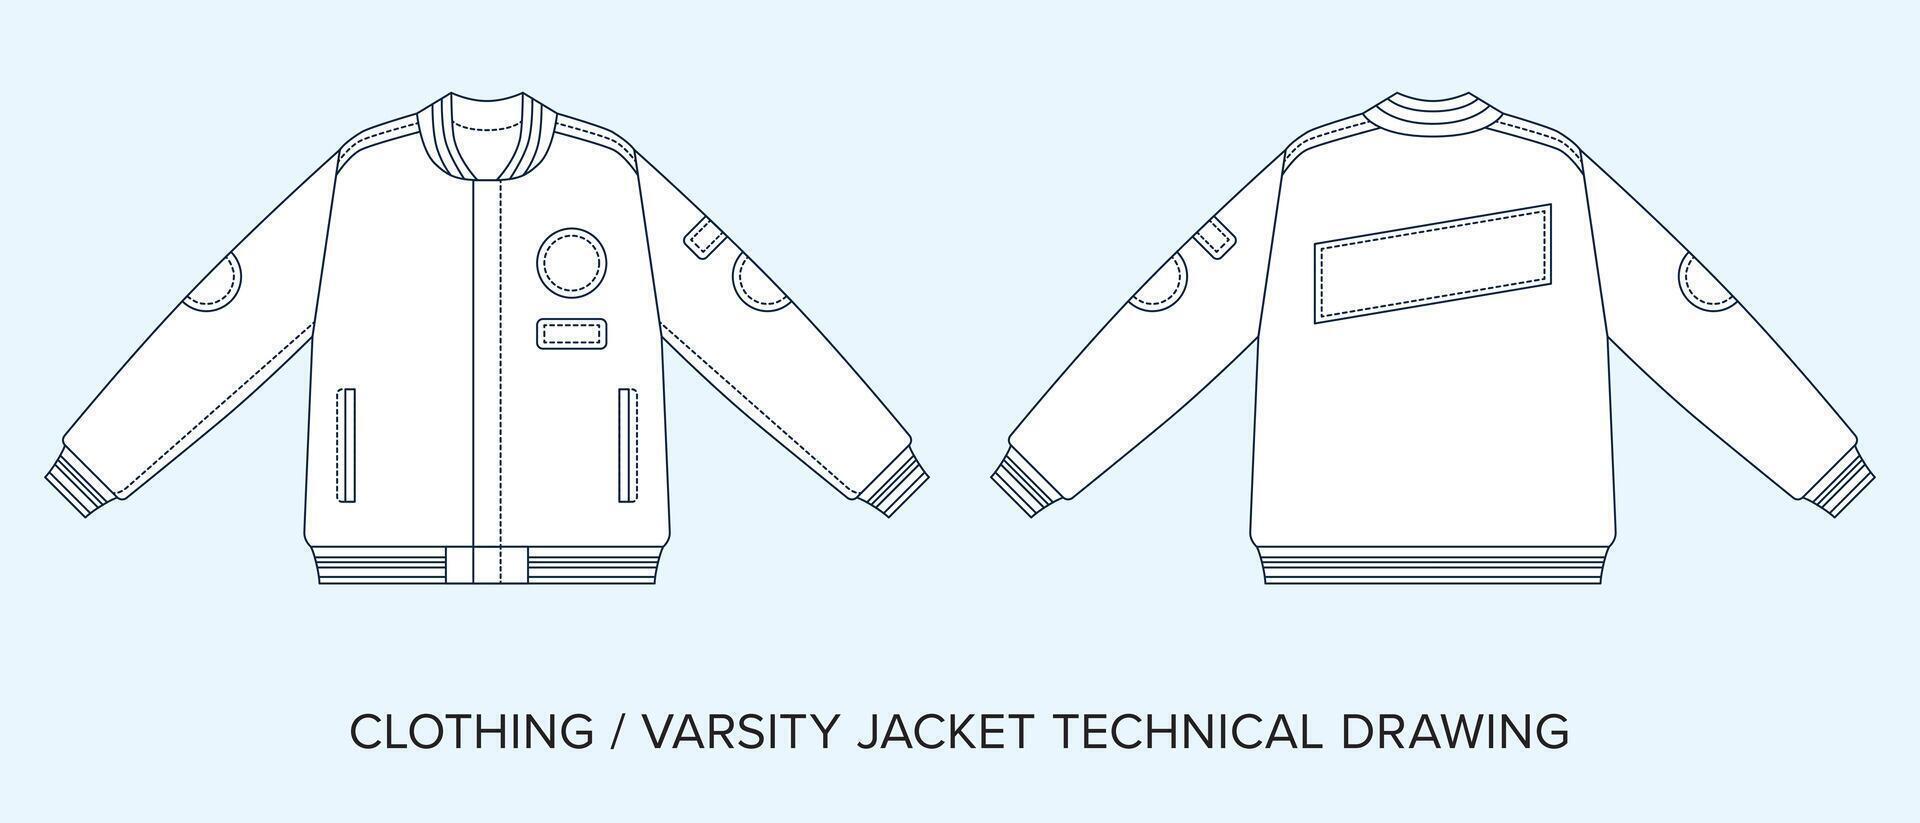 Uni Jacke mit Taschen und Flecken, technisch Zeichnung, bekleidung Entwurf zum Mode Designer vektor